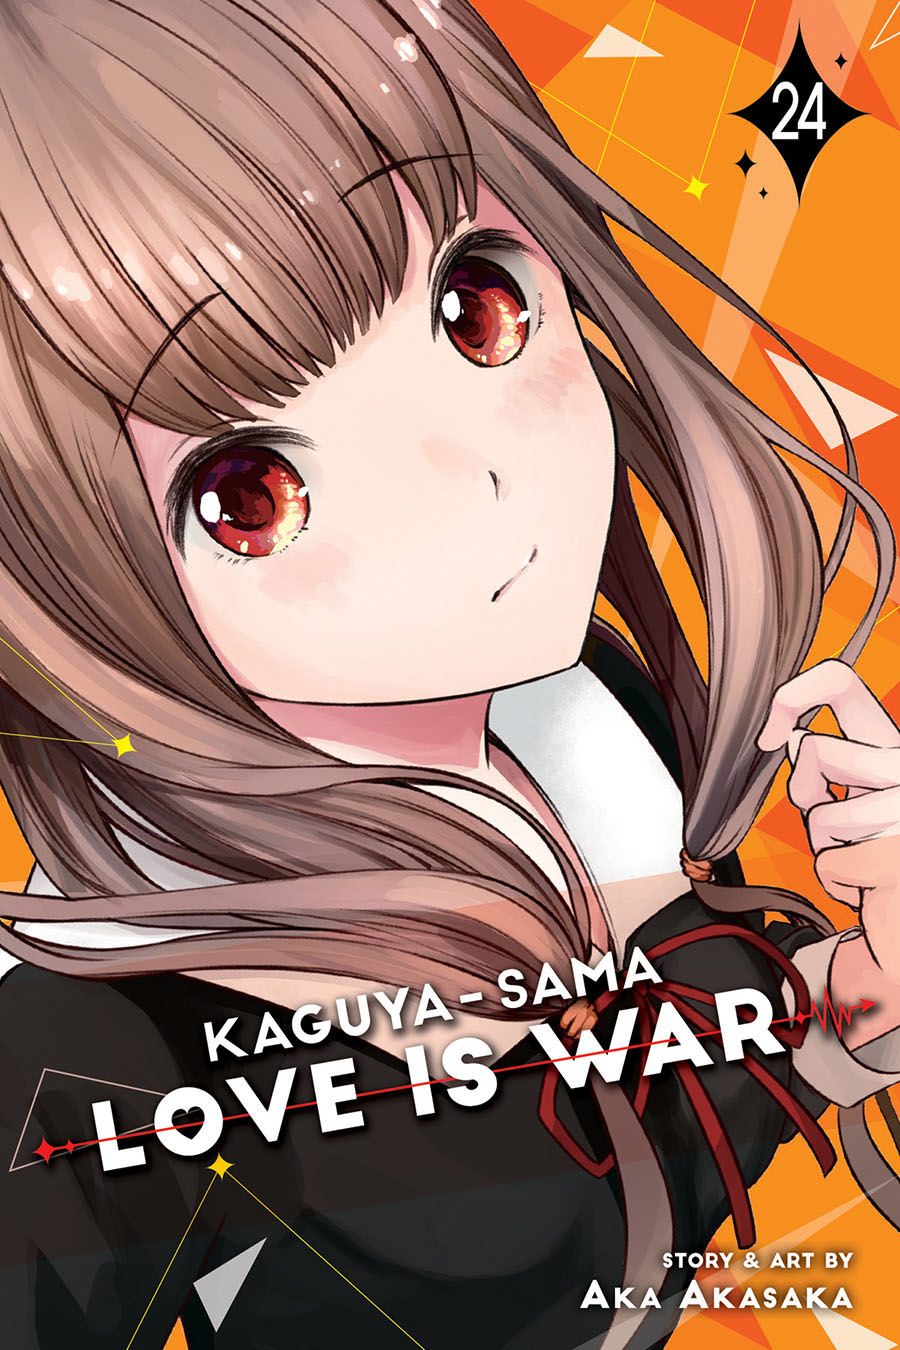 Kaguya-Sama Love Is War Vol 24 GN